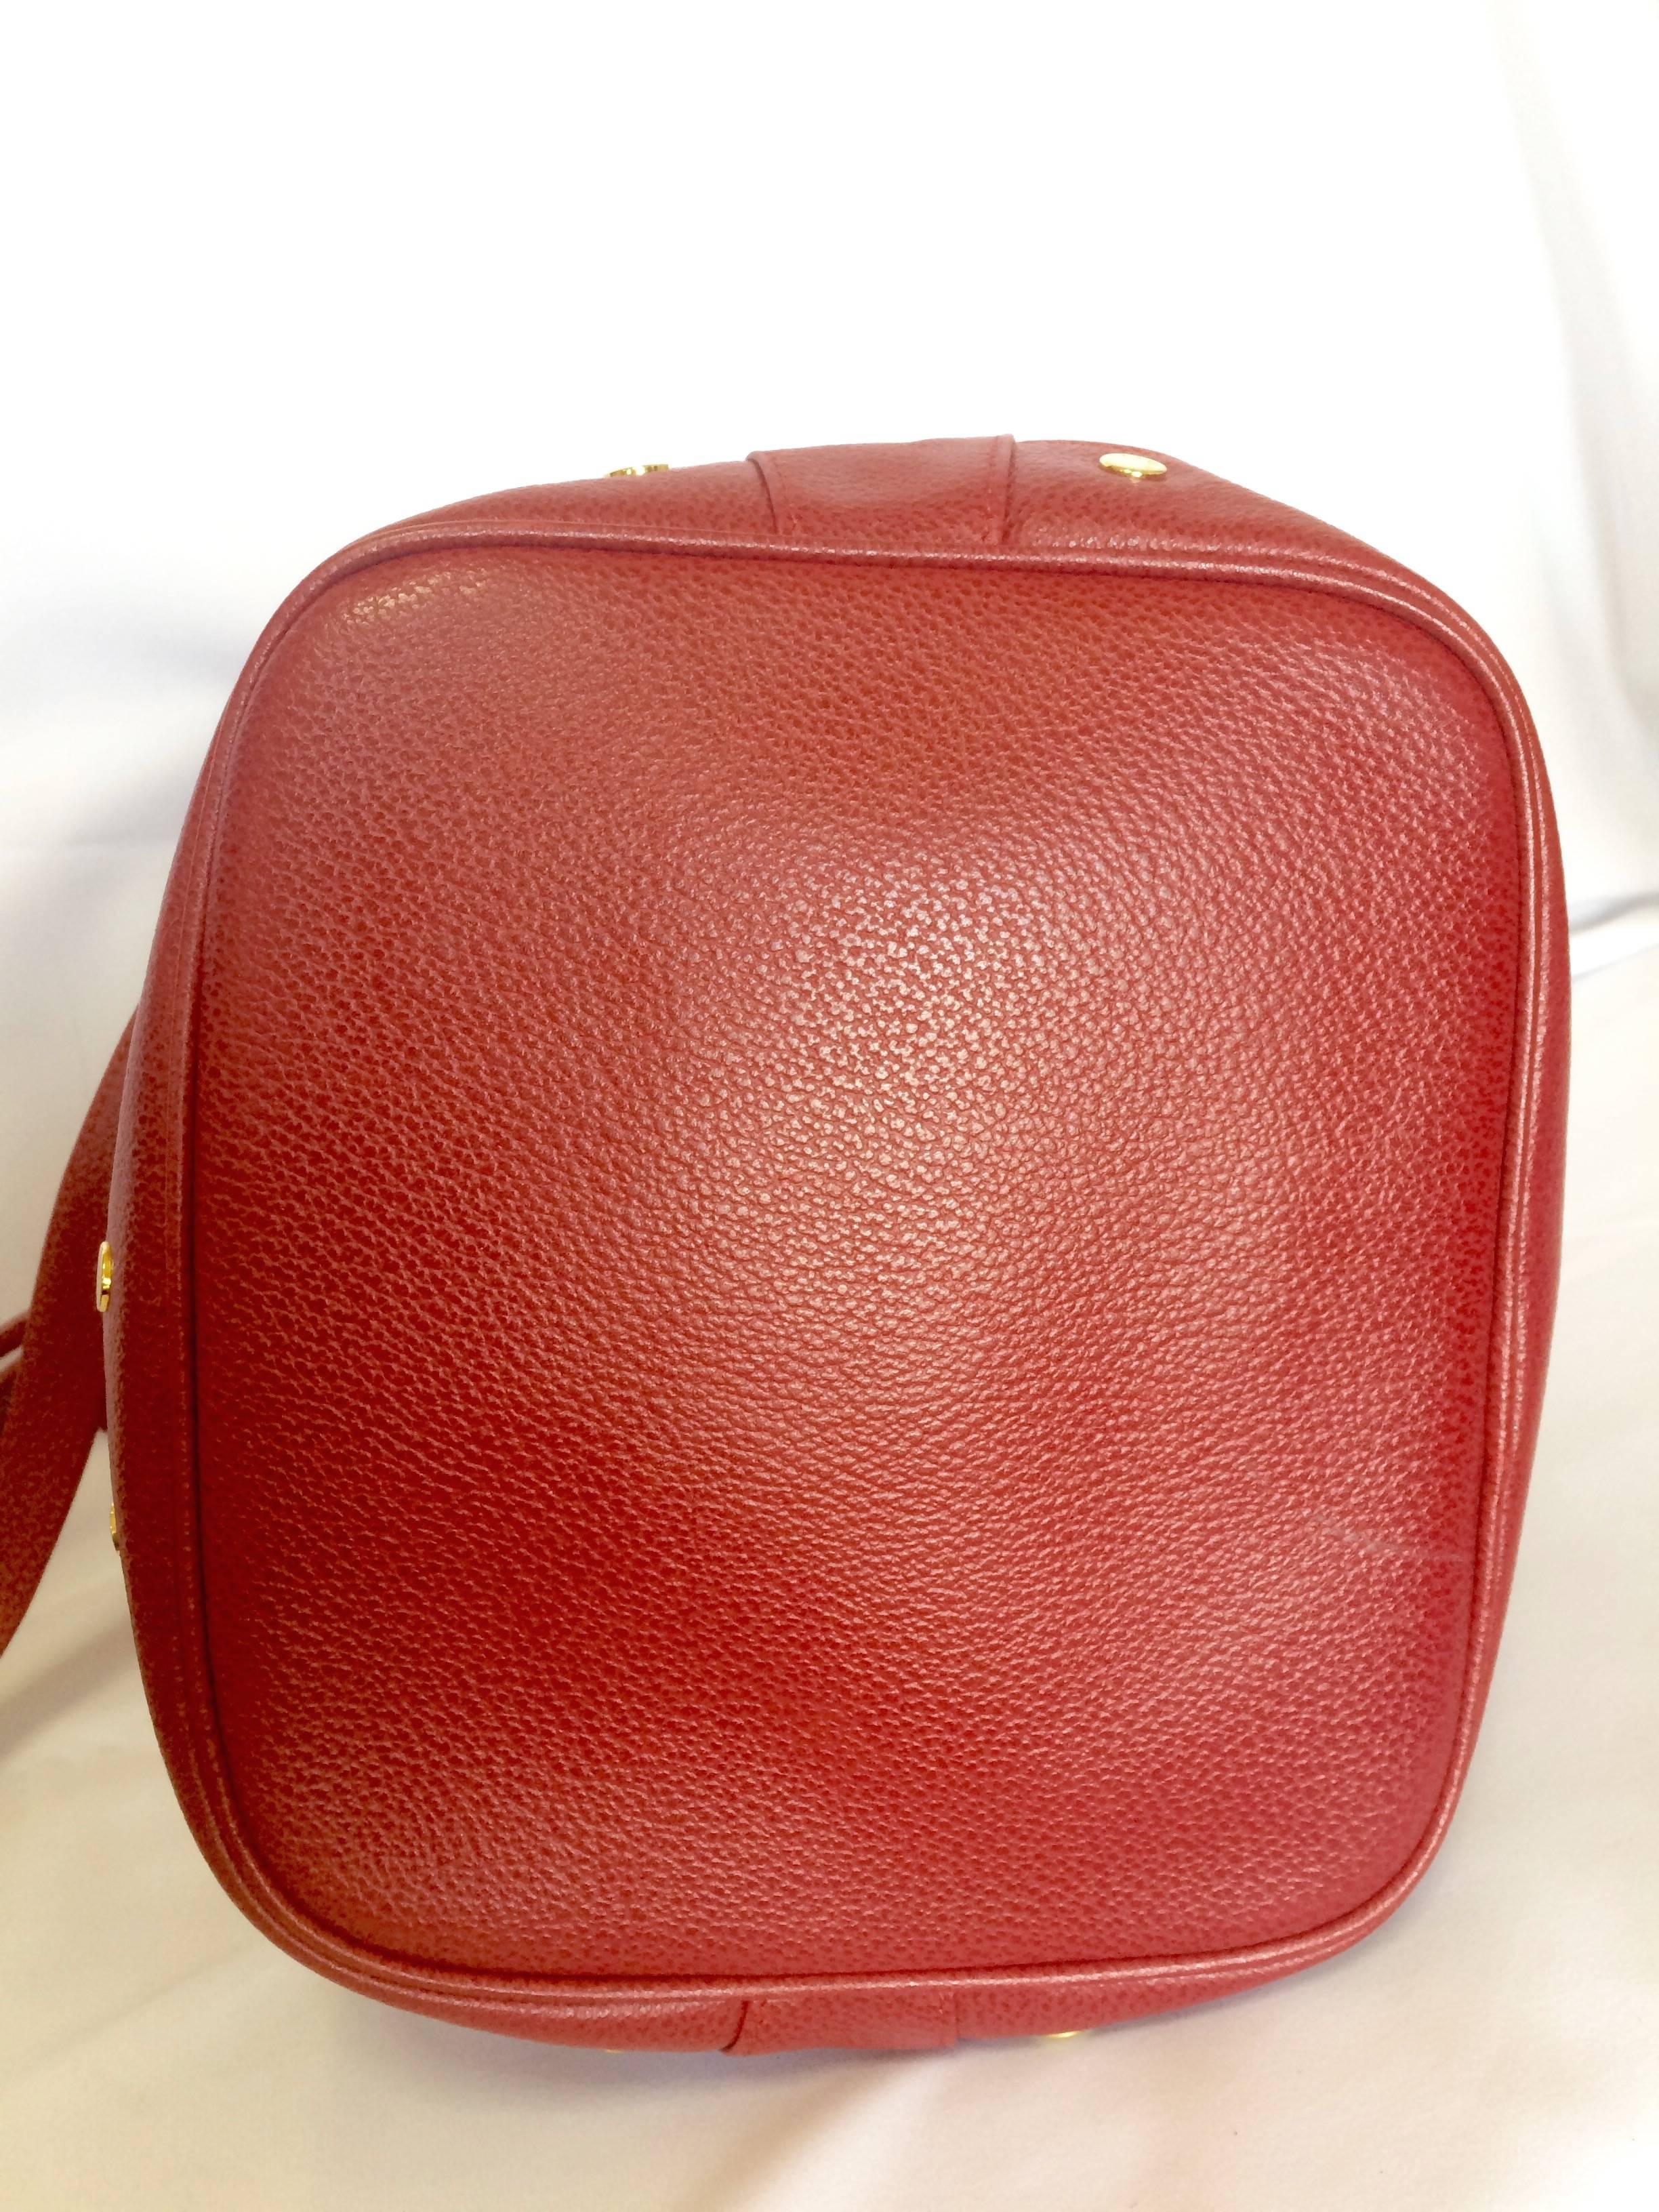 Vintage LANVIN apricot red hobo bucket shoulder bag with studded logo motifs. 1